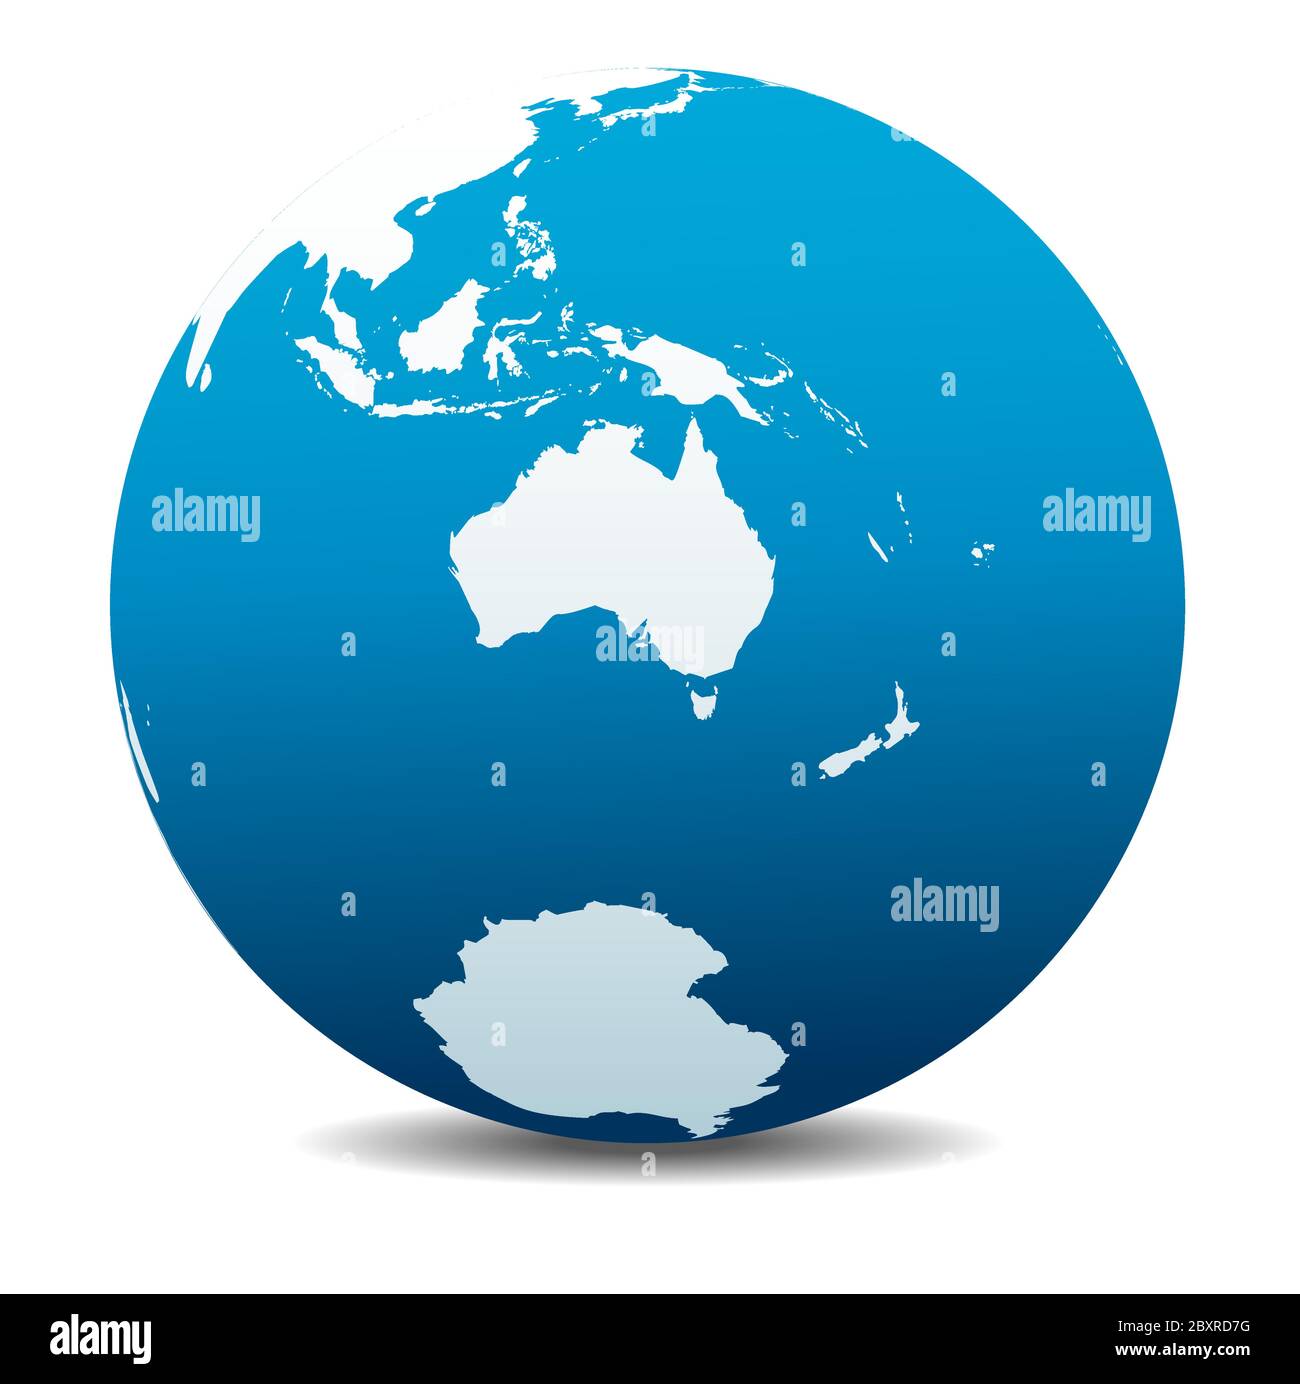 Australia e Nuova Zelanda, Polo Sud, Antartide. Icona Mappa vettoriale del globo mondiale, Terra. Tutti gli elementi si trovano su singoli livelli nel file vettoriale. Illustrazione Vettoriale